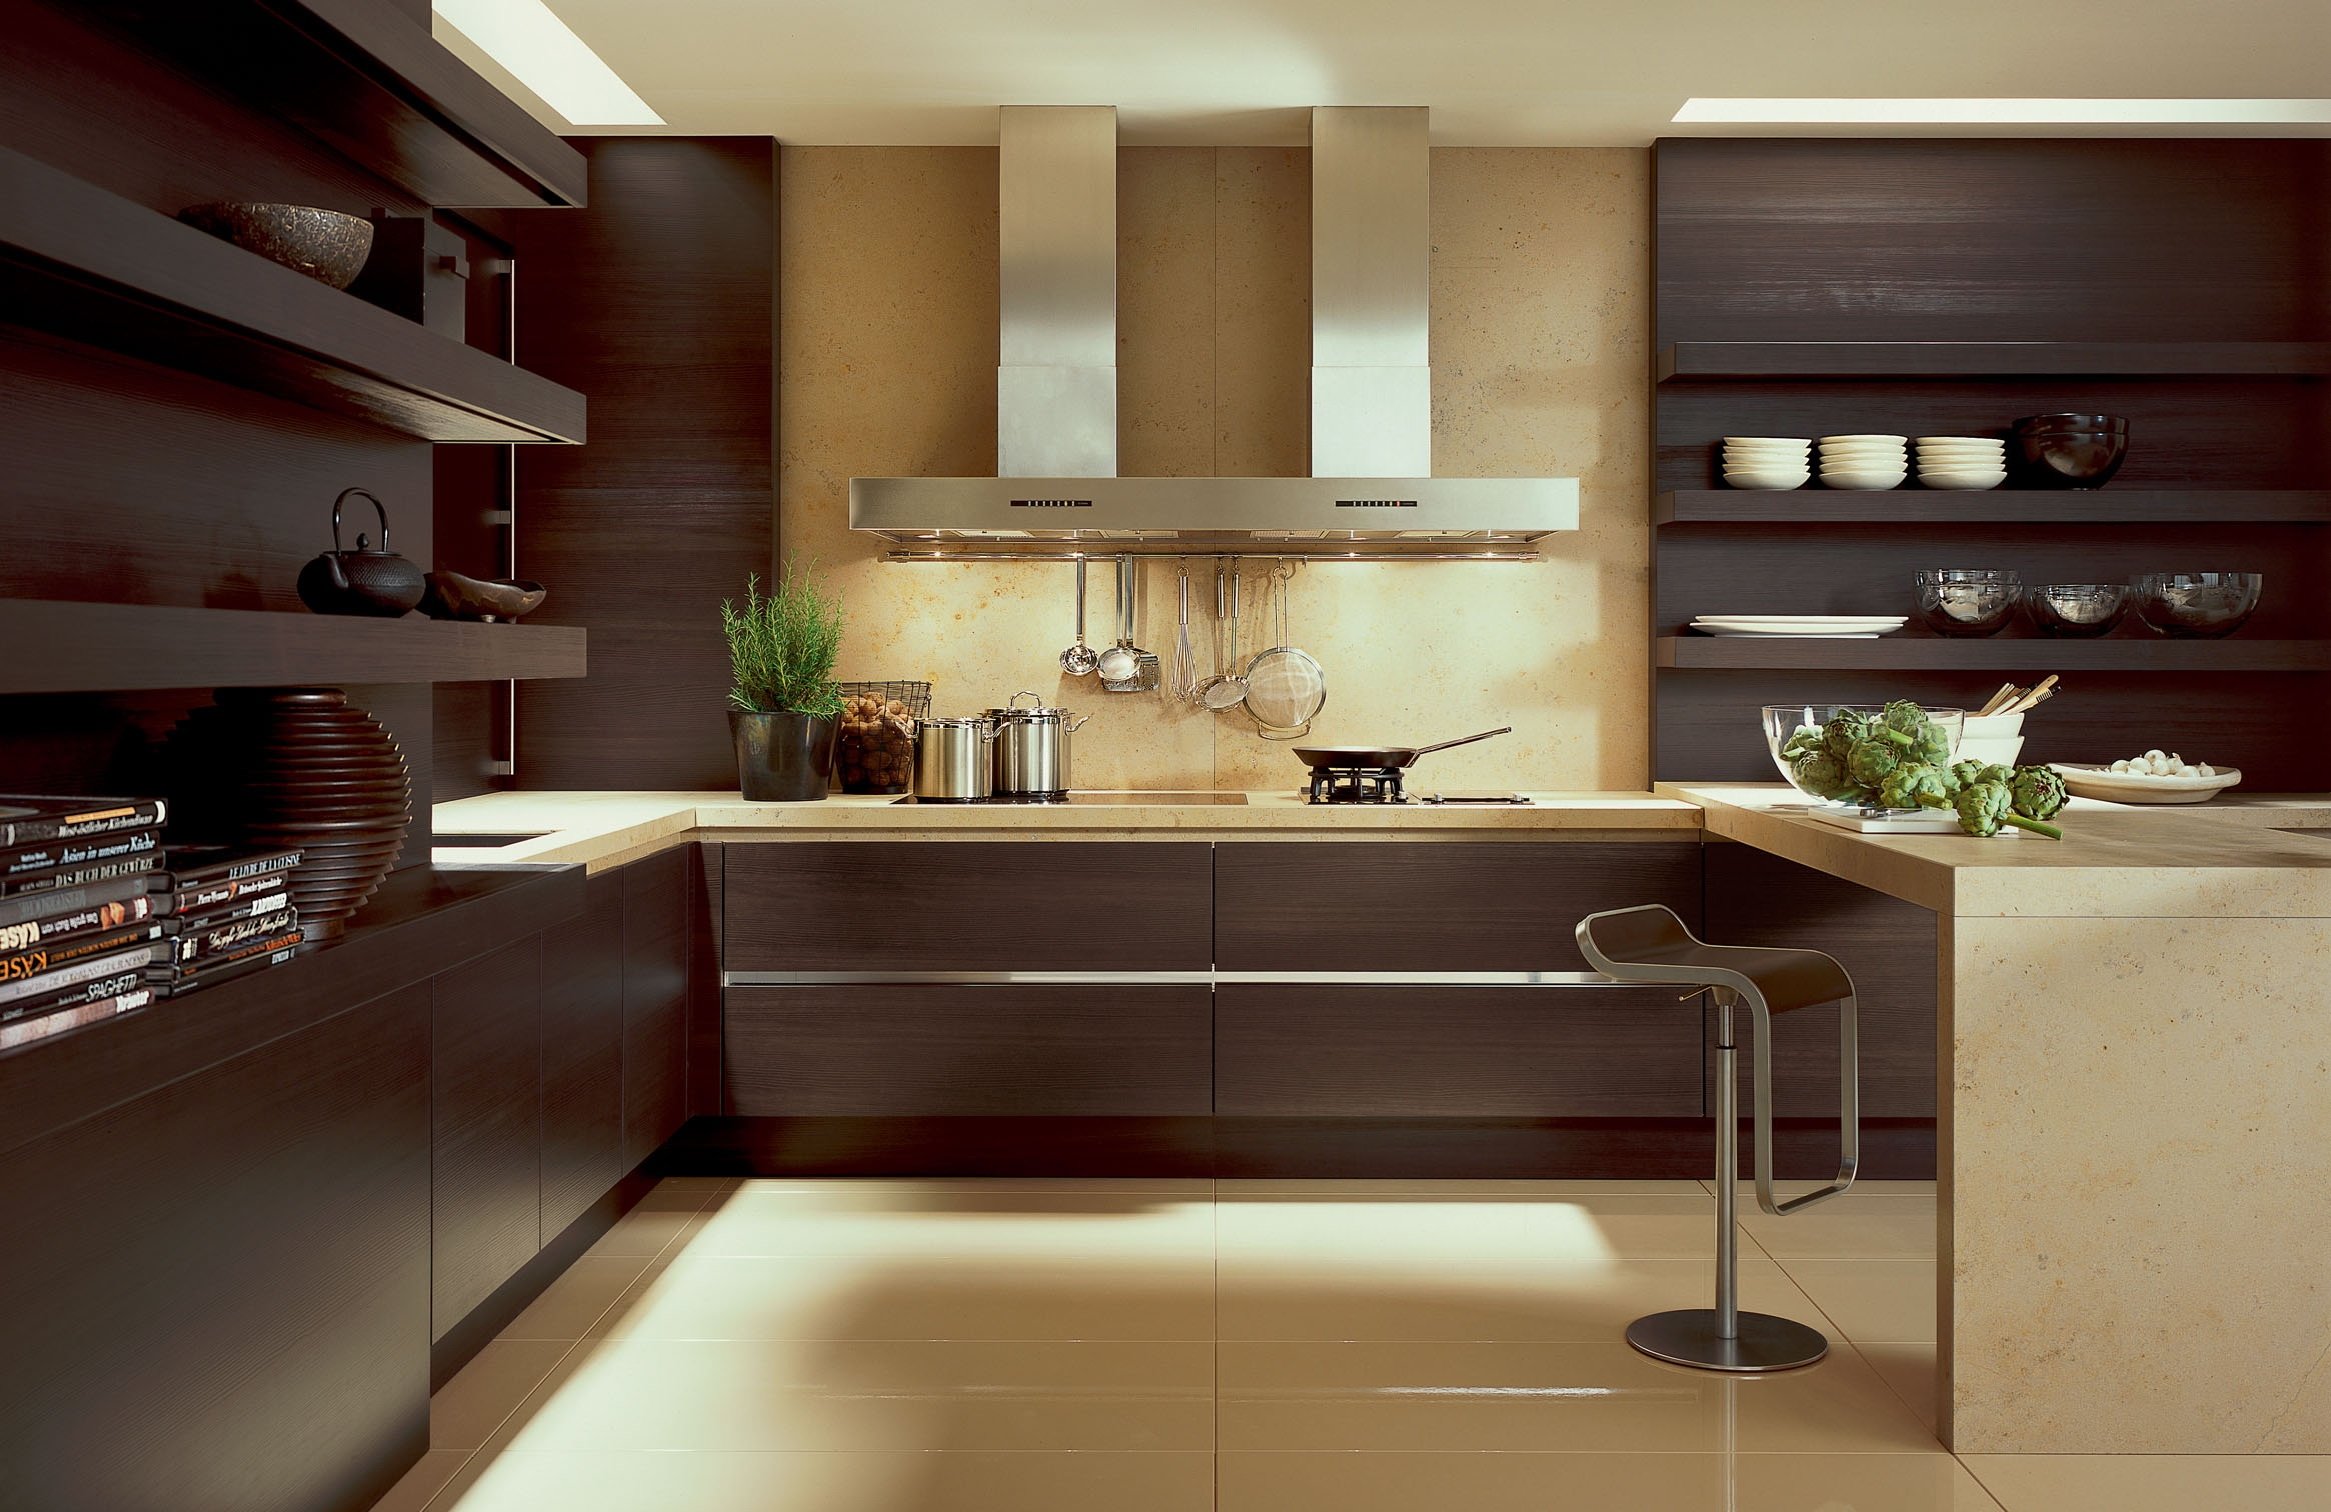 Кухня в современном стиле: как красиво оформить интерьер квартиры или дома, идеи готового дизайна, материалы, как подобрать гарнитур, выбор декора, фото решений